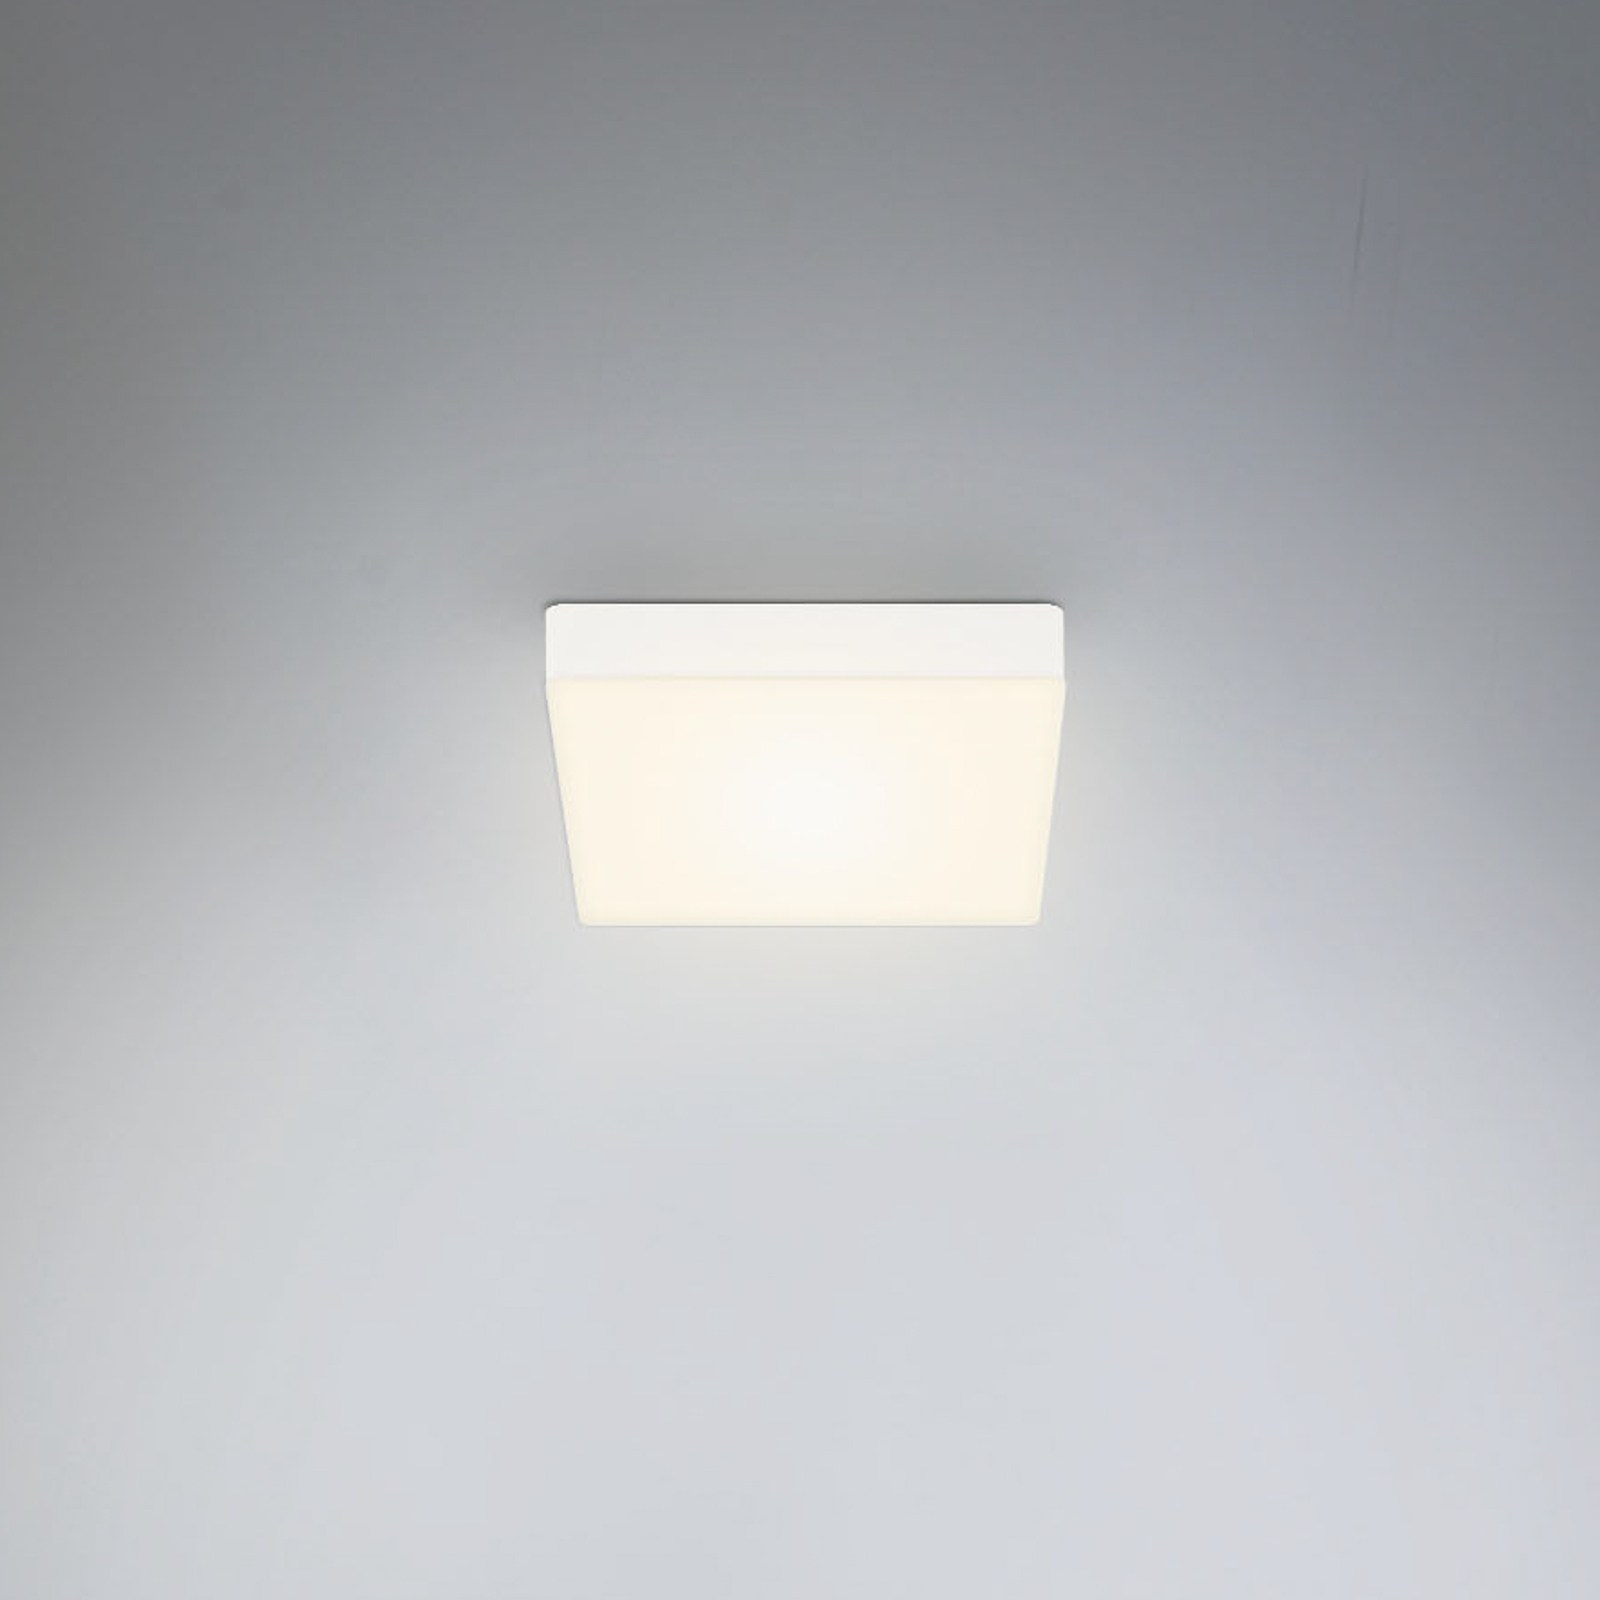 Flame LED ceiling light 15.7 x 15.7 cm, white